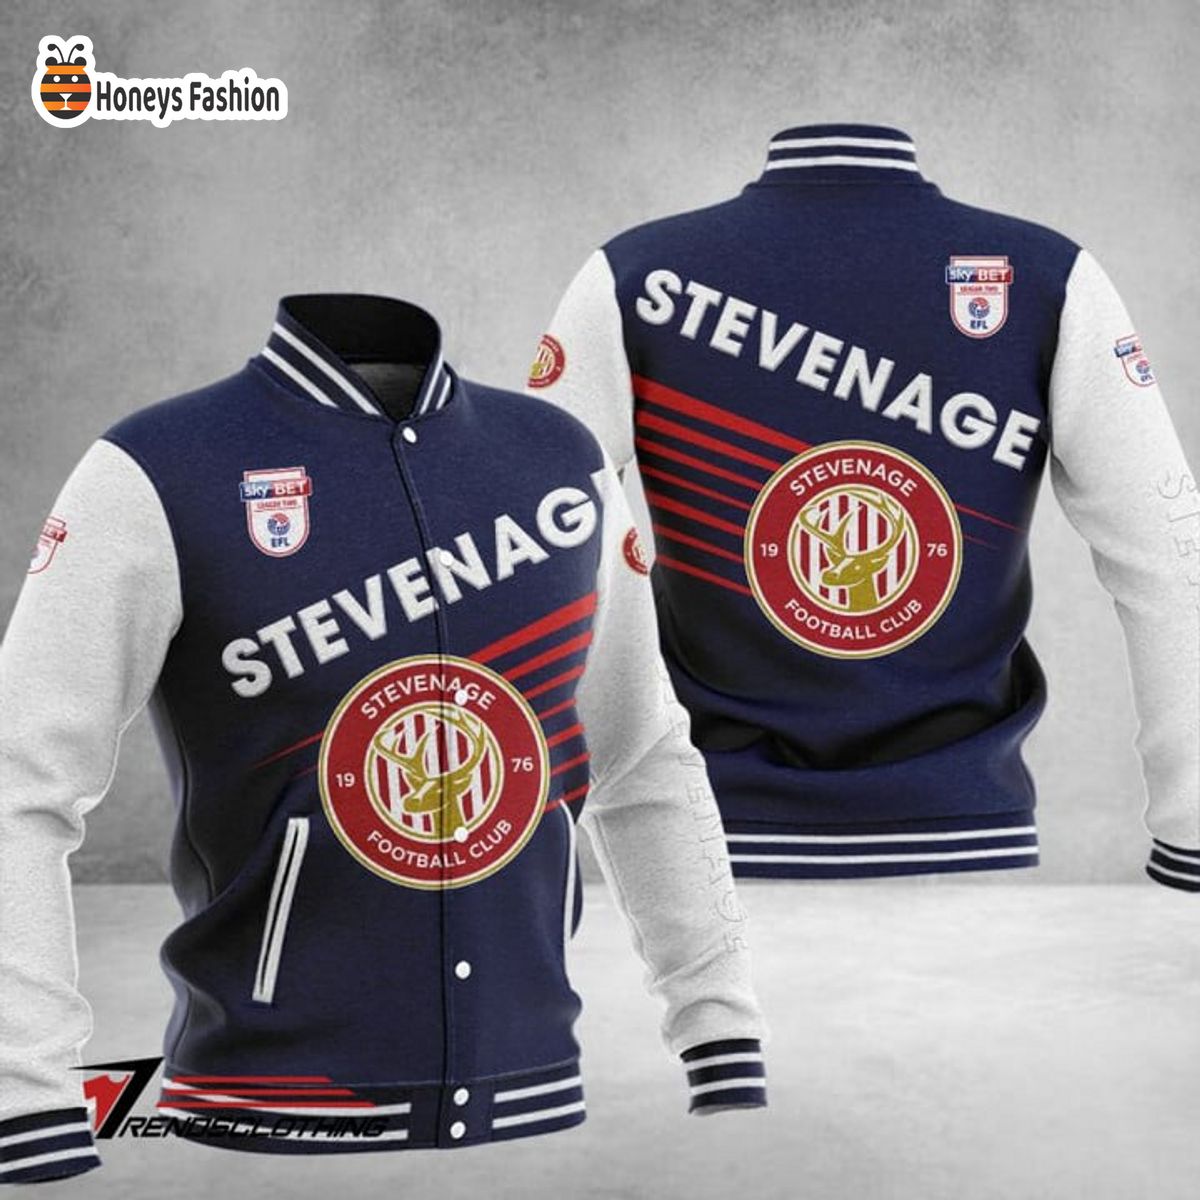 Stevenage Football Club Baseball Jacket